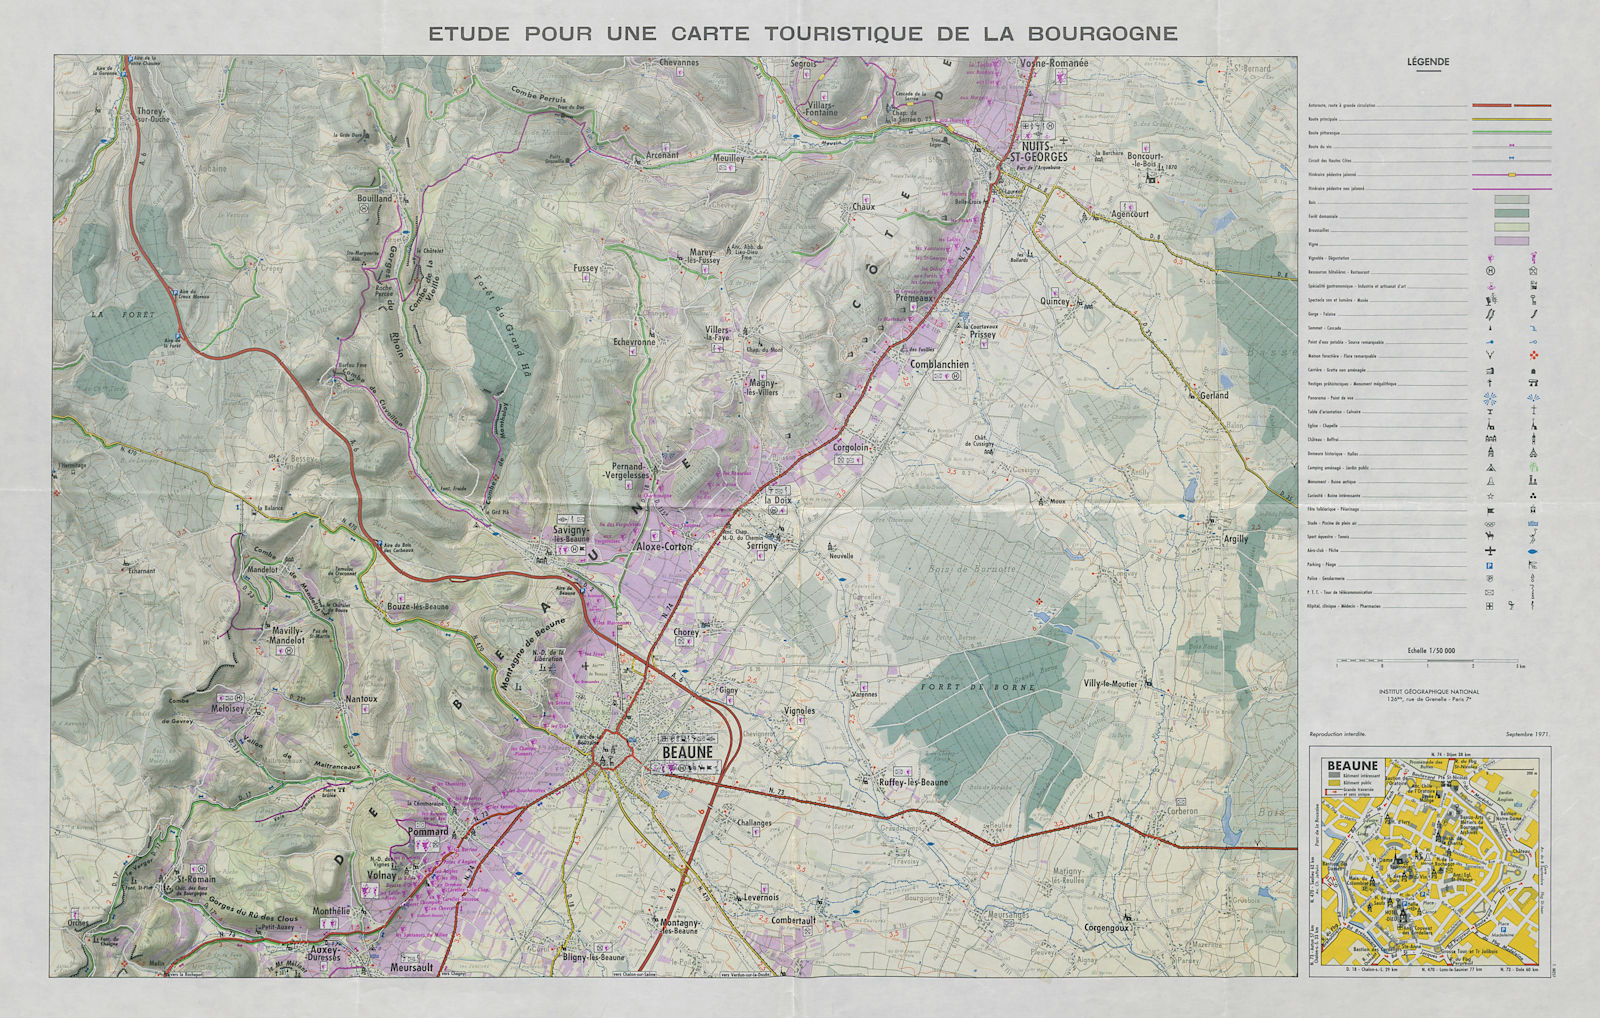 Associate Product Etude pour une carte touristique de la Bourgogne. Burgundy tourist wine map 1971